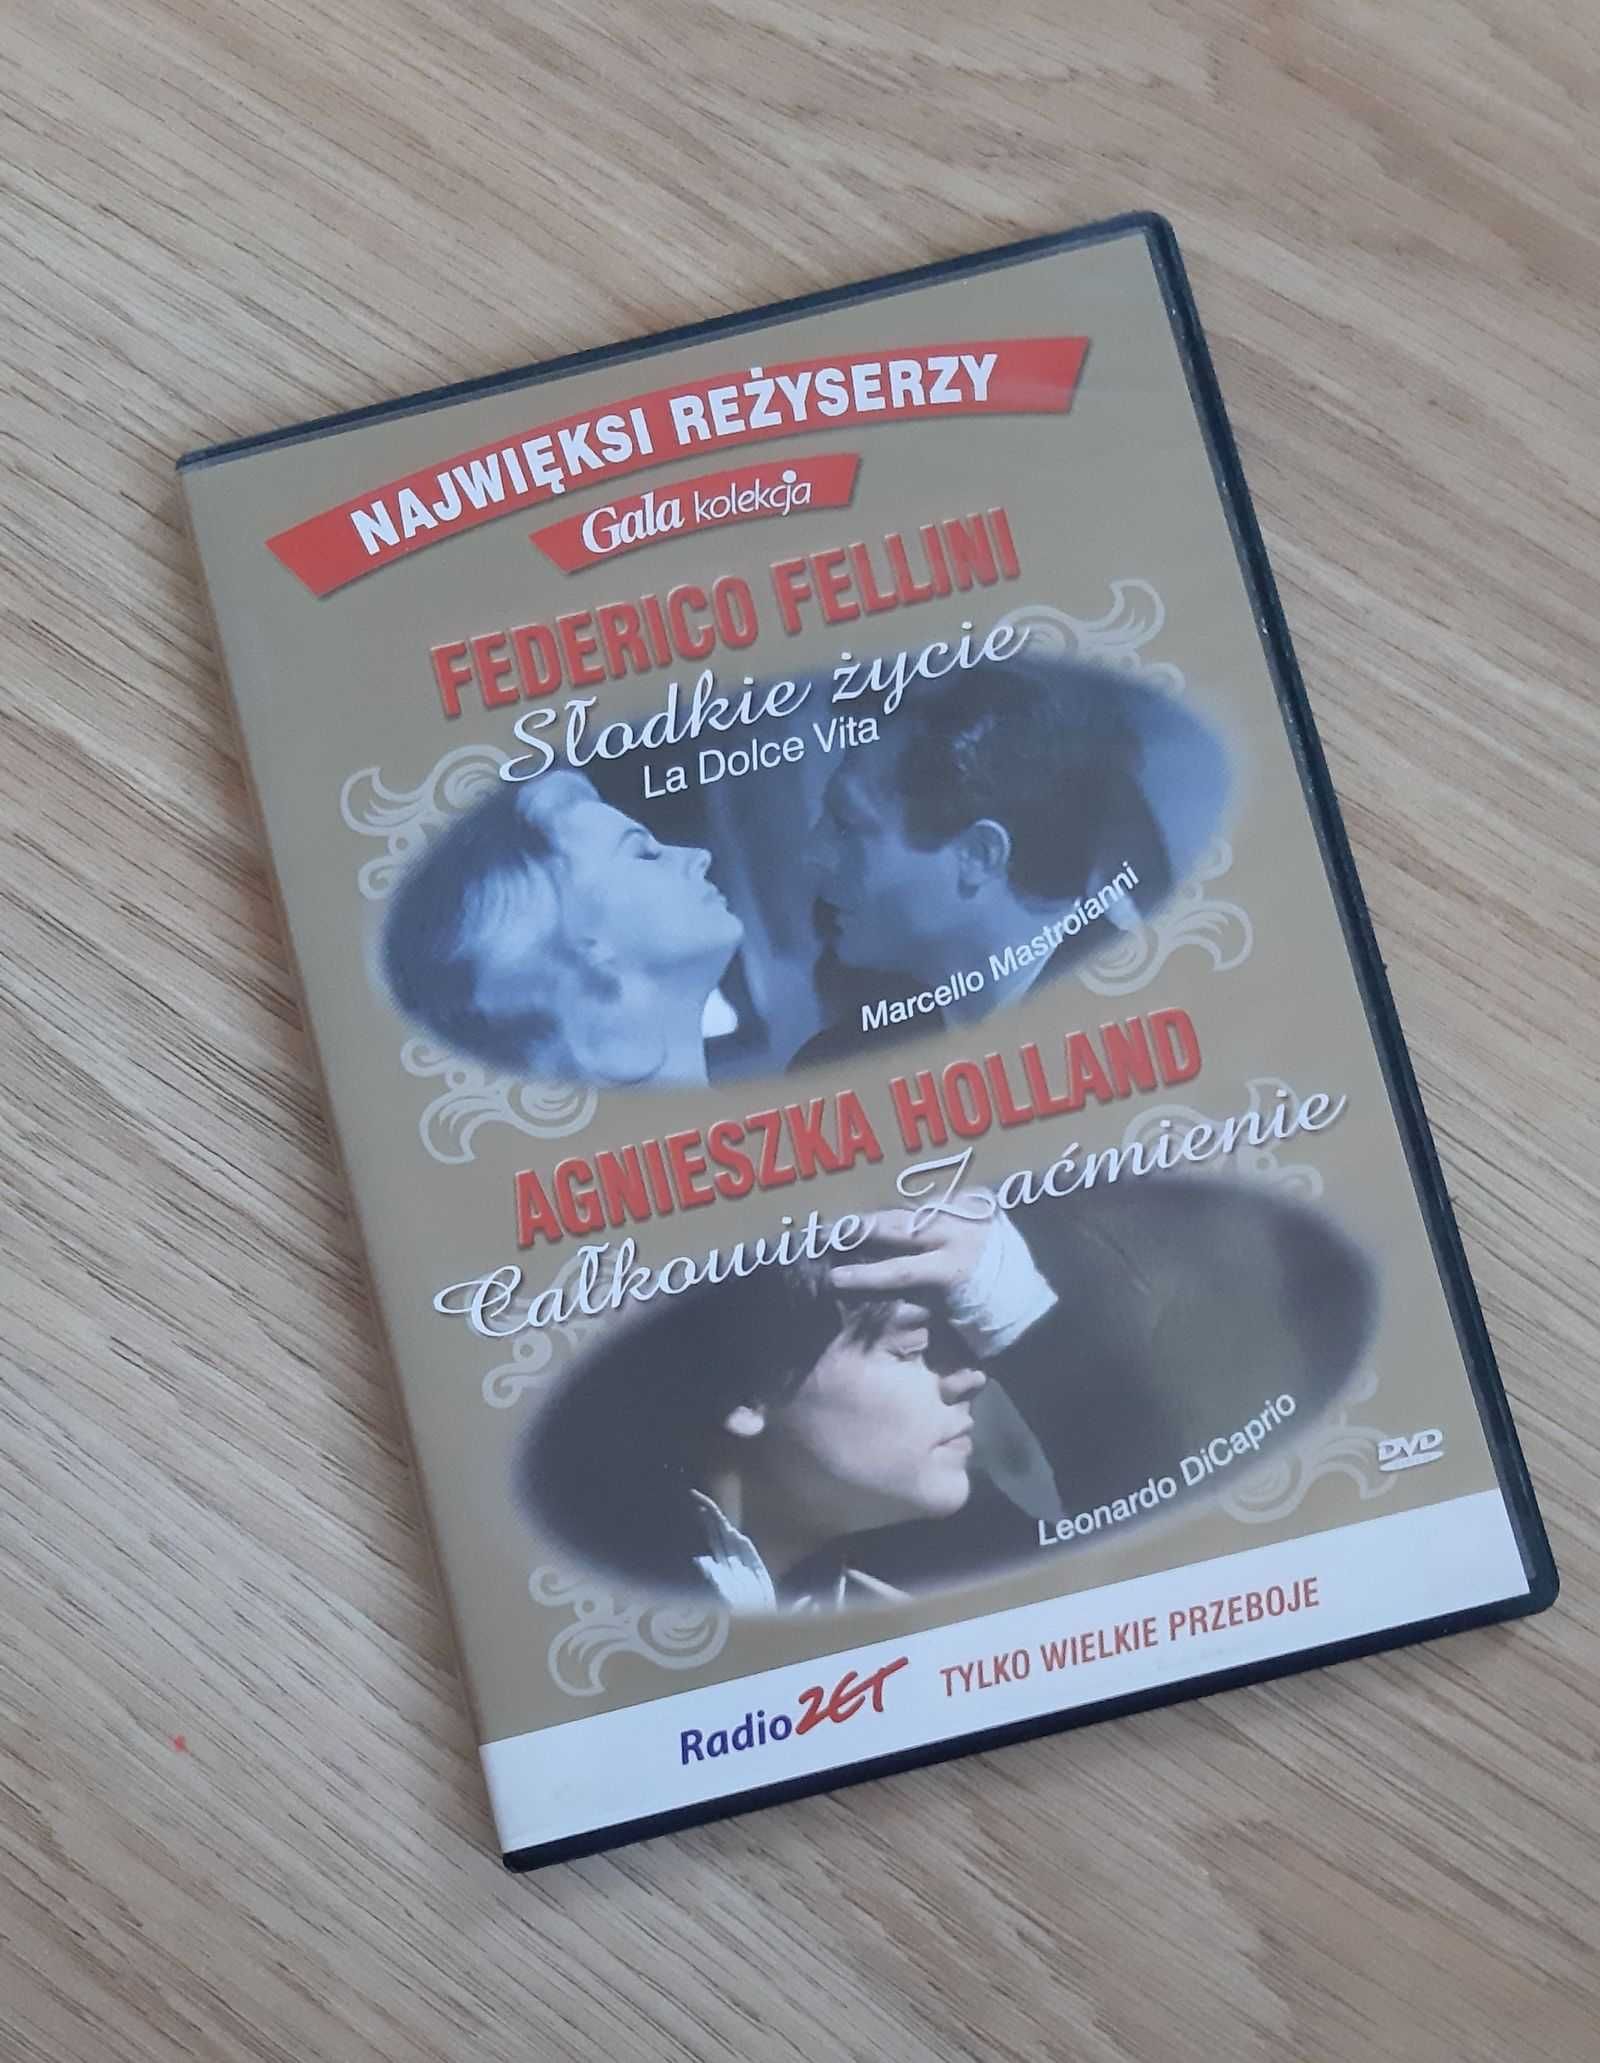 Film DVD Słodkie życie (Fellini) i Całkowite zaćmienie (Holland)